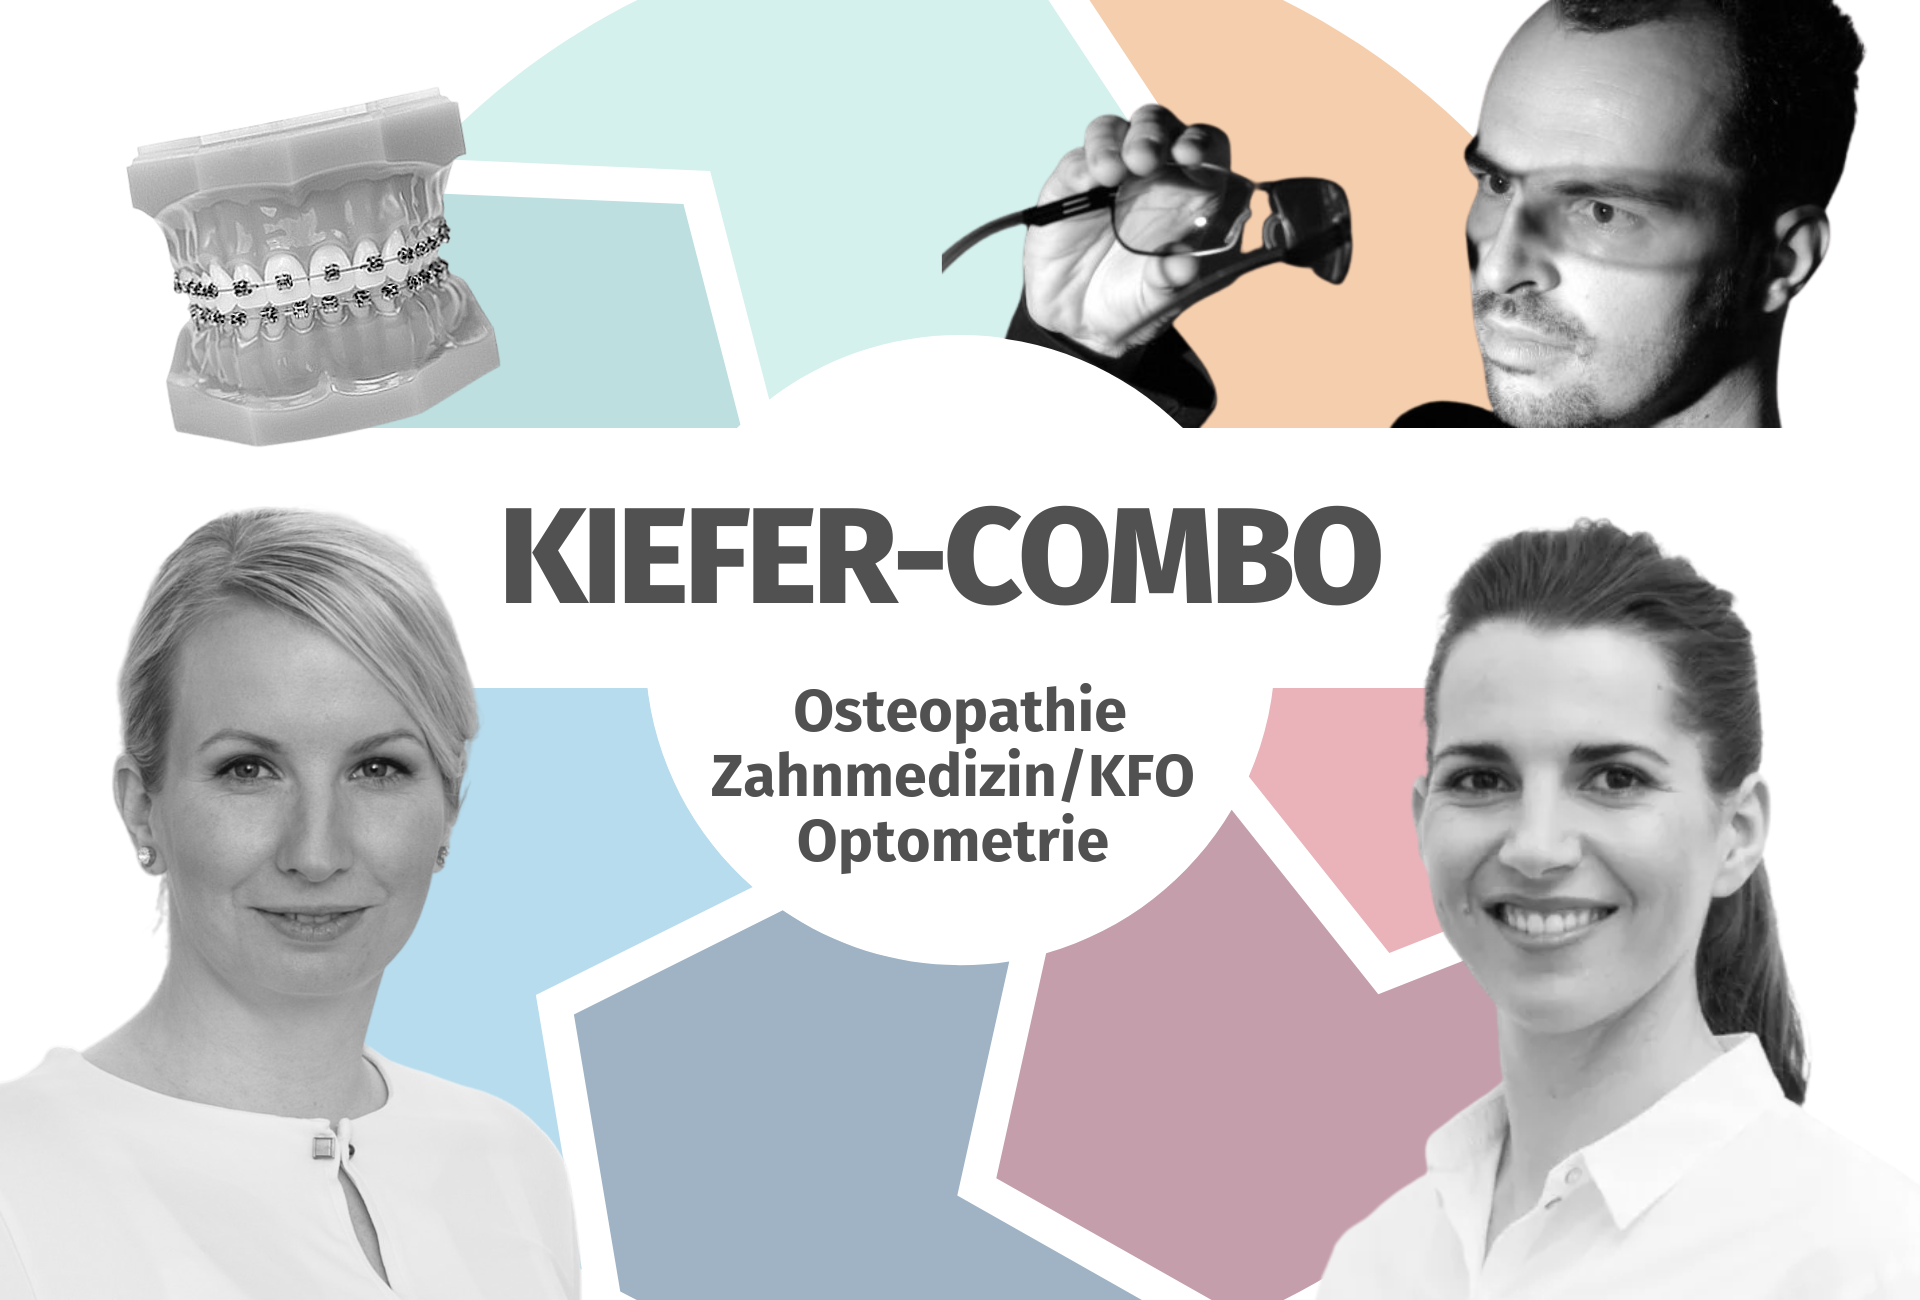 Kiefer-Combo: Osteopathie, Zahnmedizin/KFO und Optometrie im Zusammenspiel